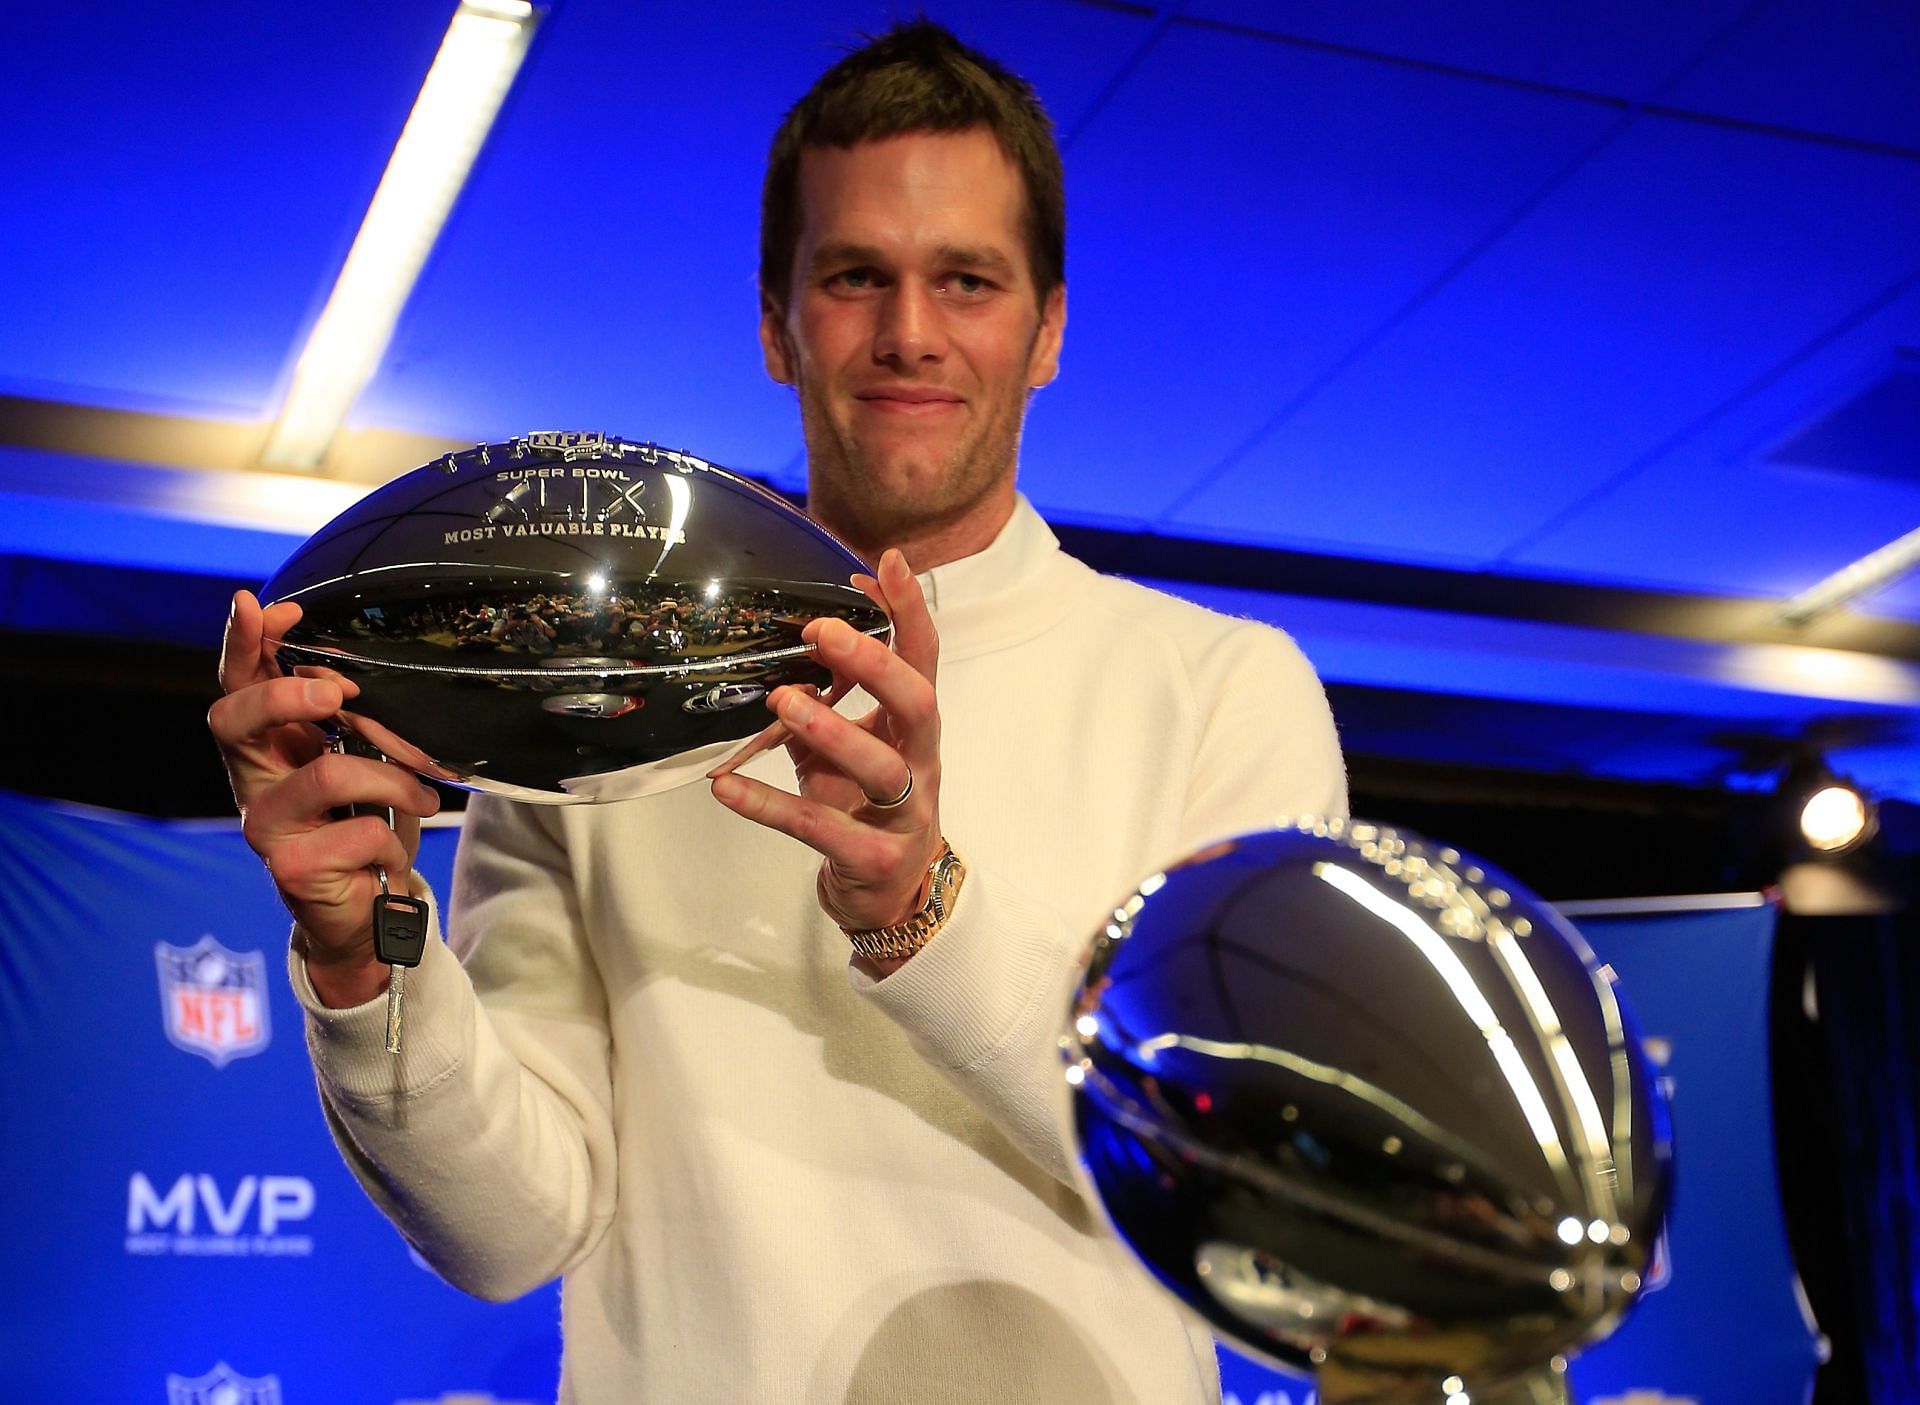 Tom Brady lifting the Super Bowl MVP trophy